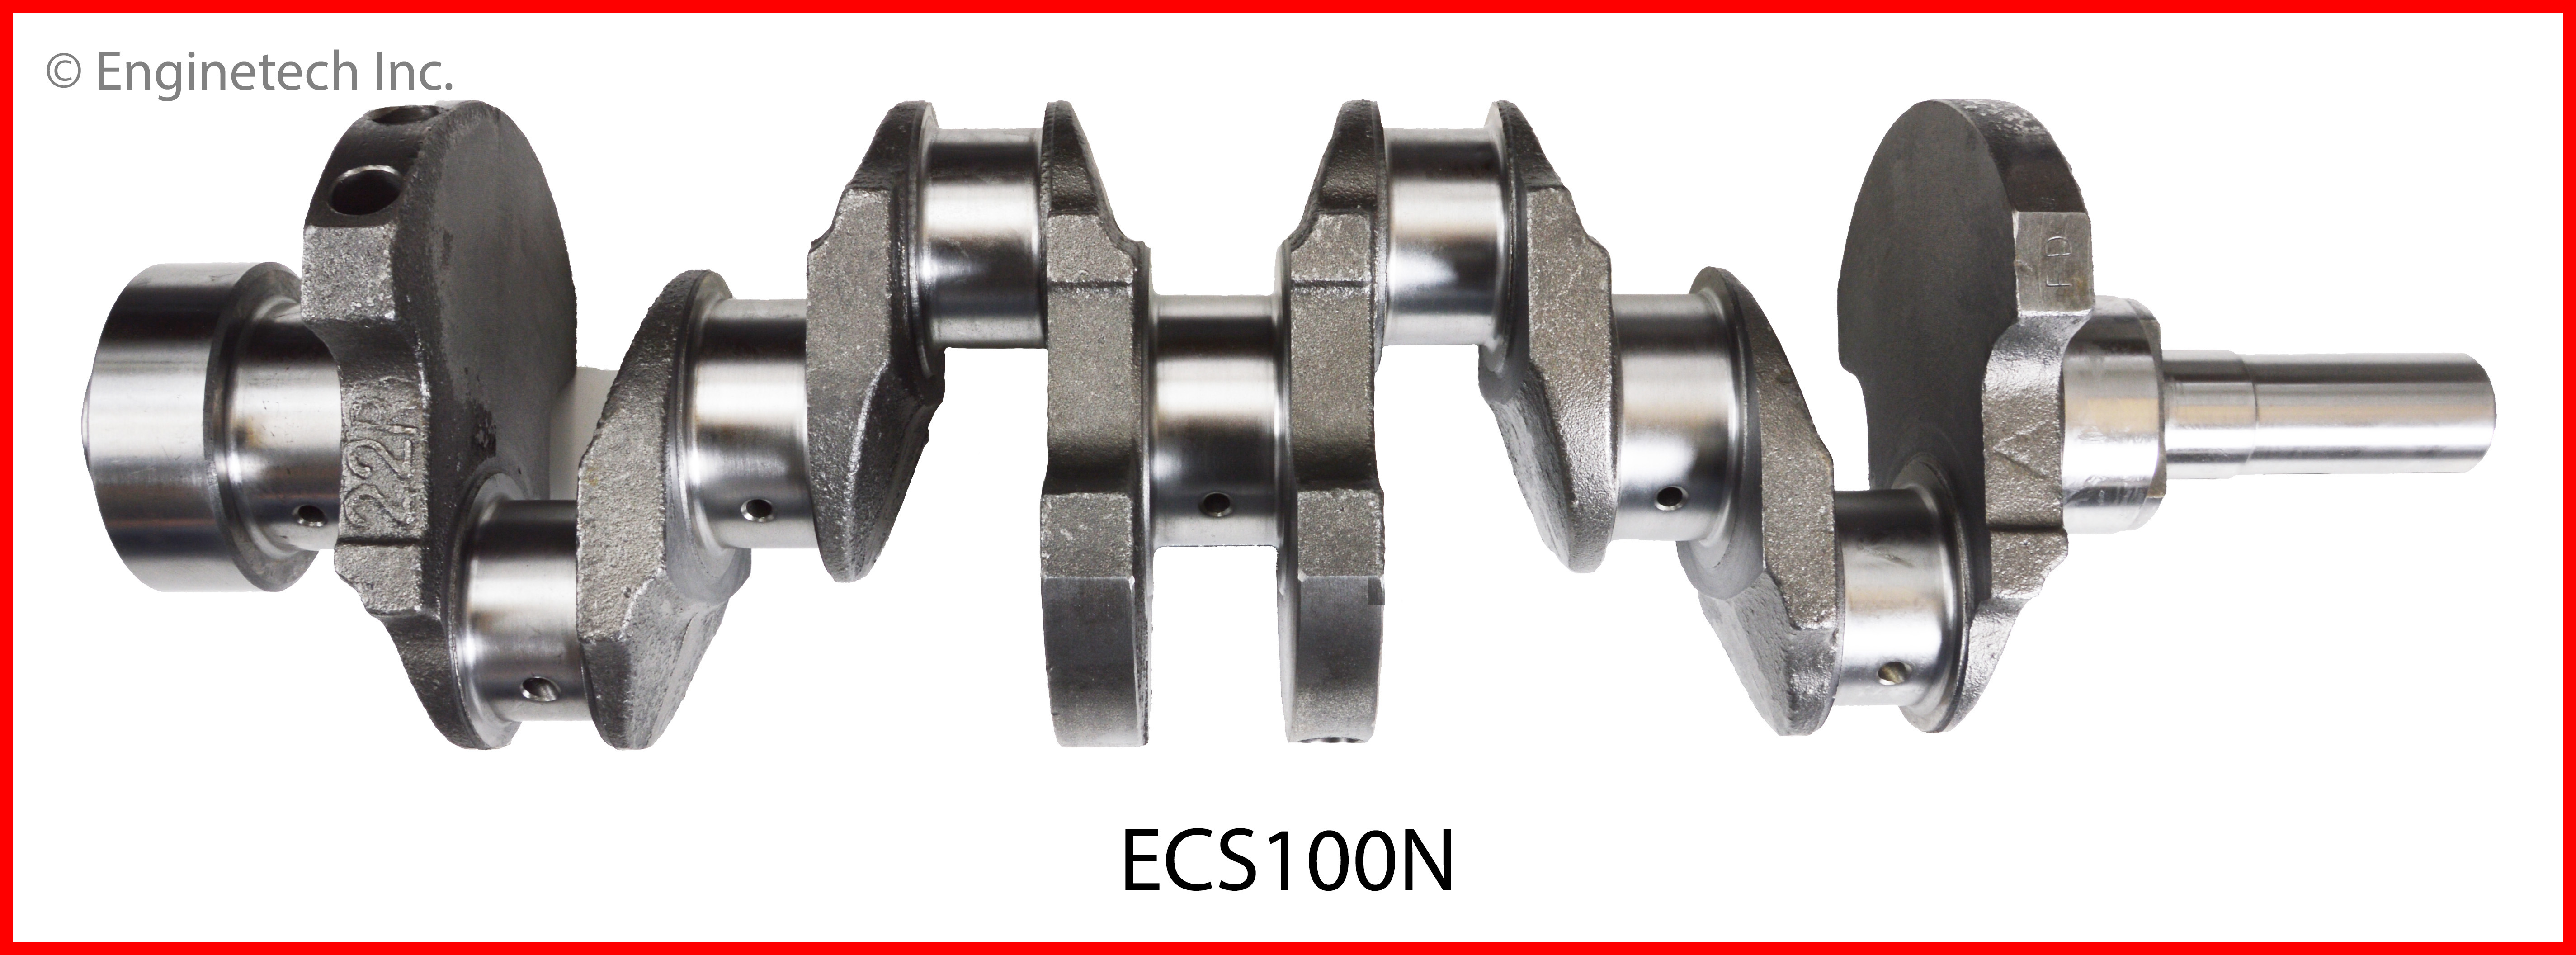 ECS100N Crankshaft - Stock Enginetech